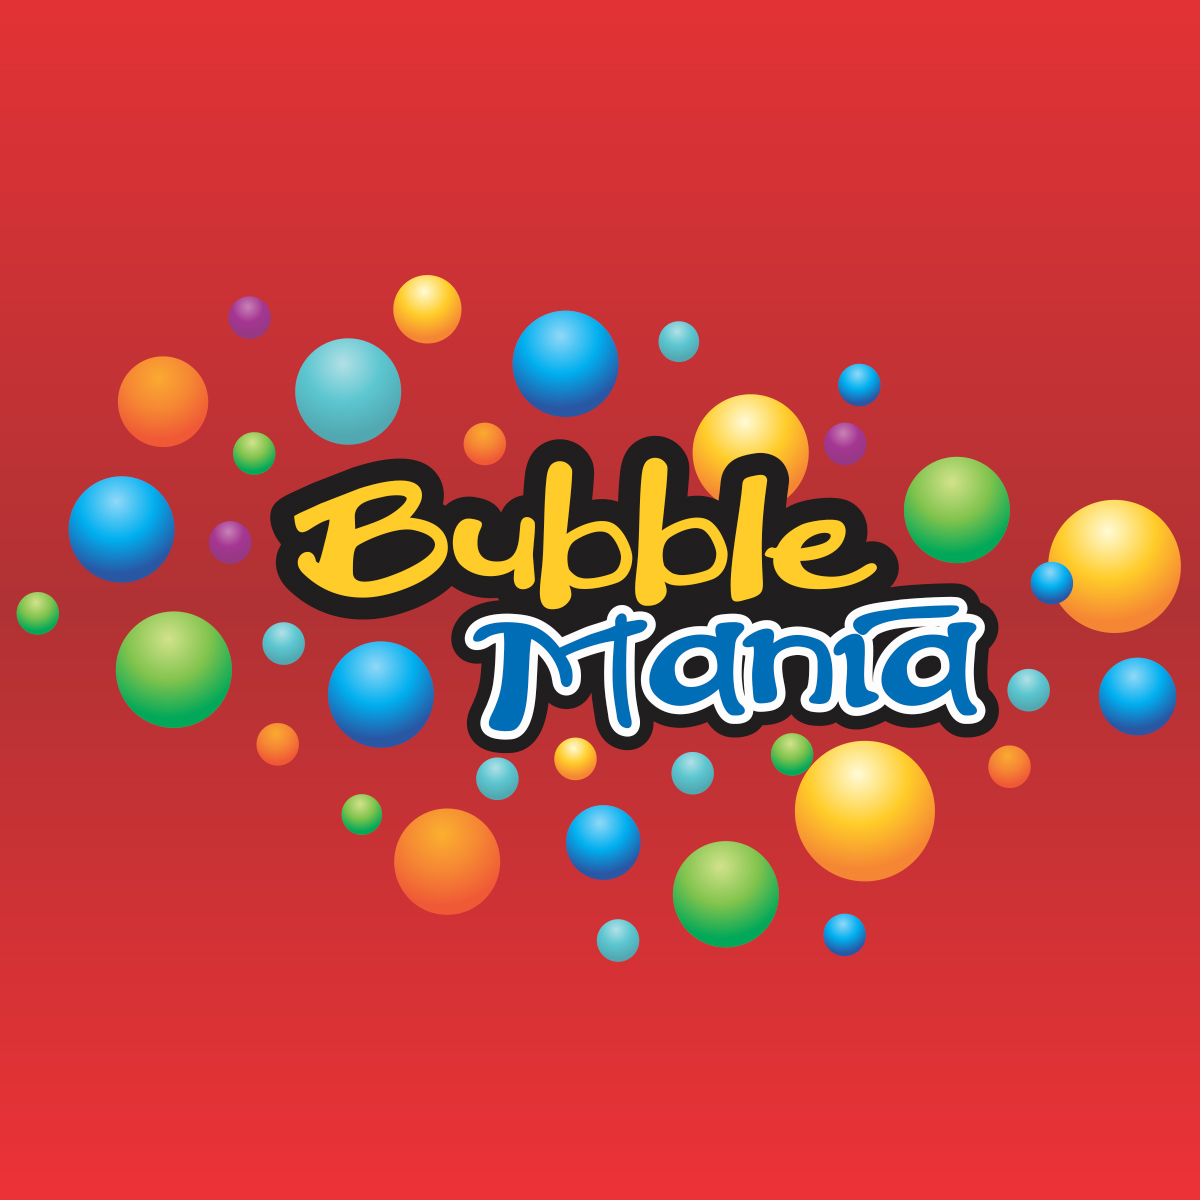 203 bubble mania